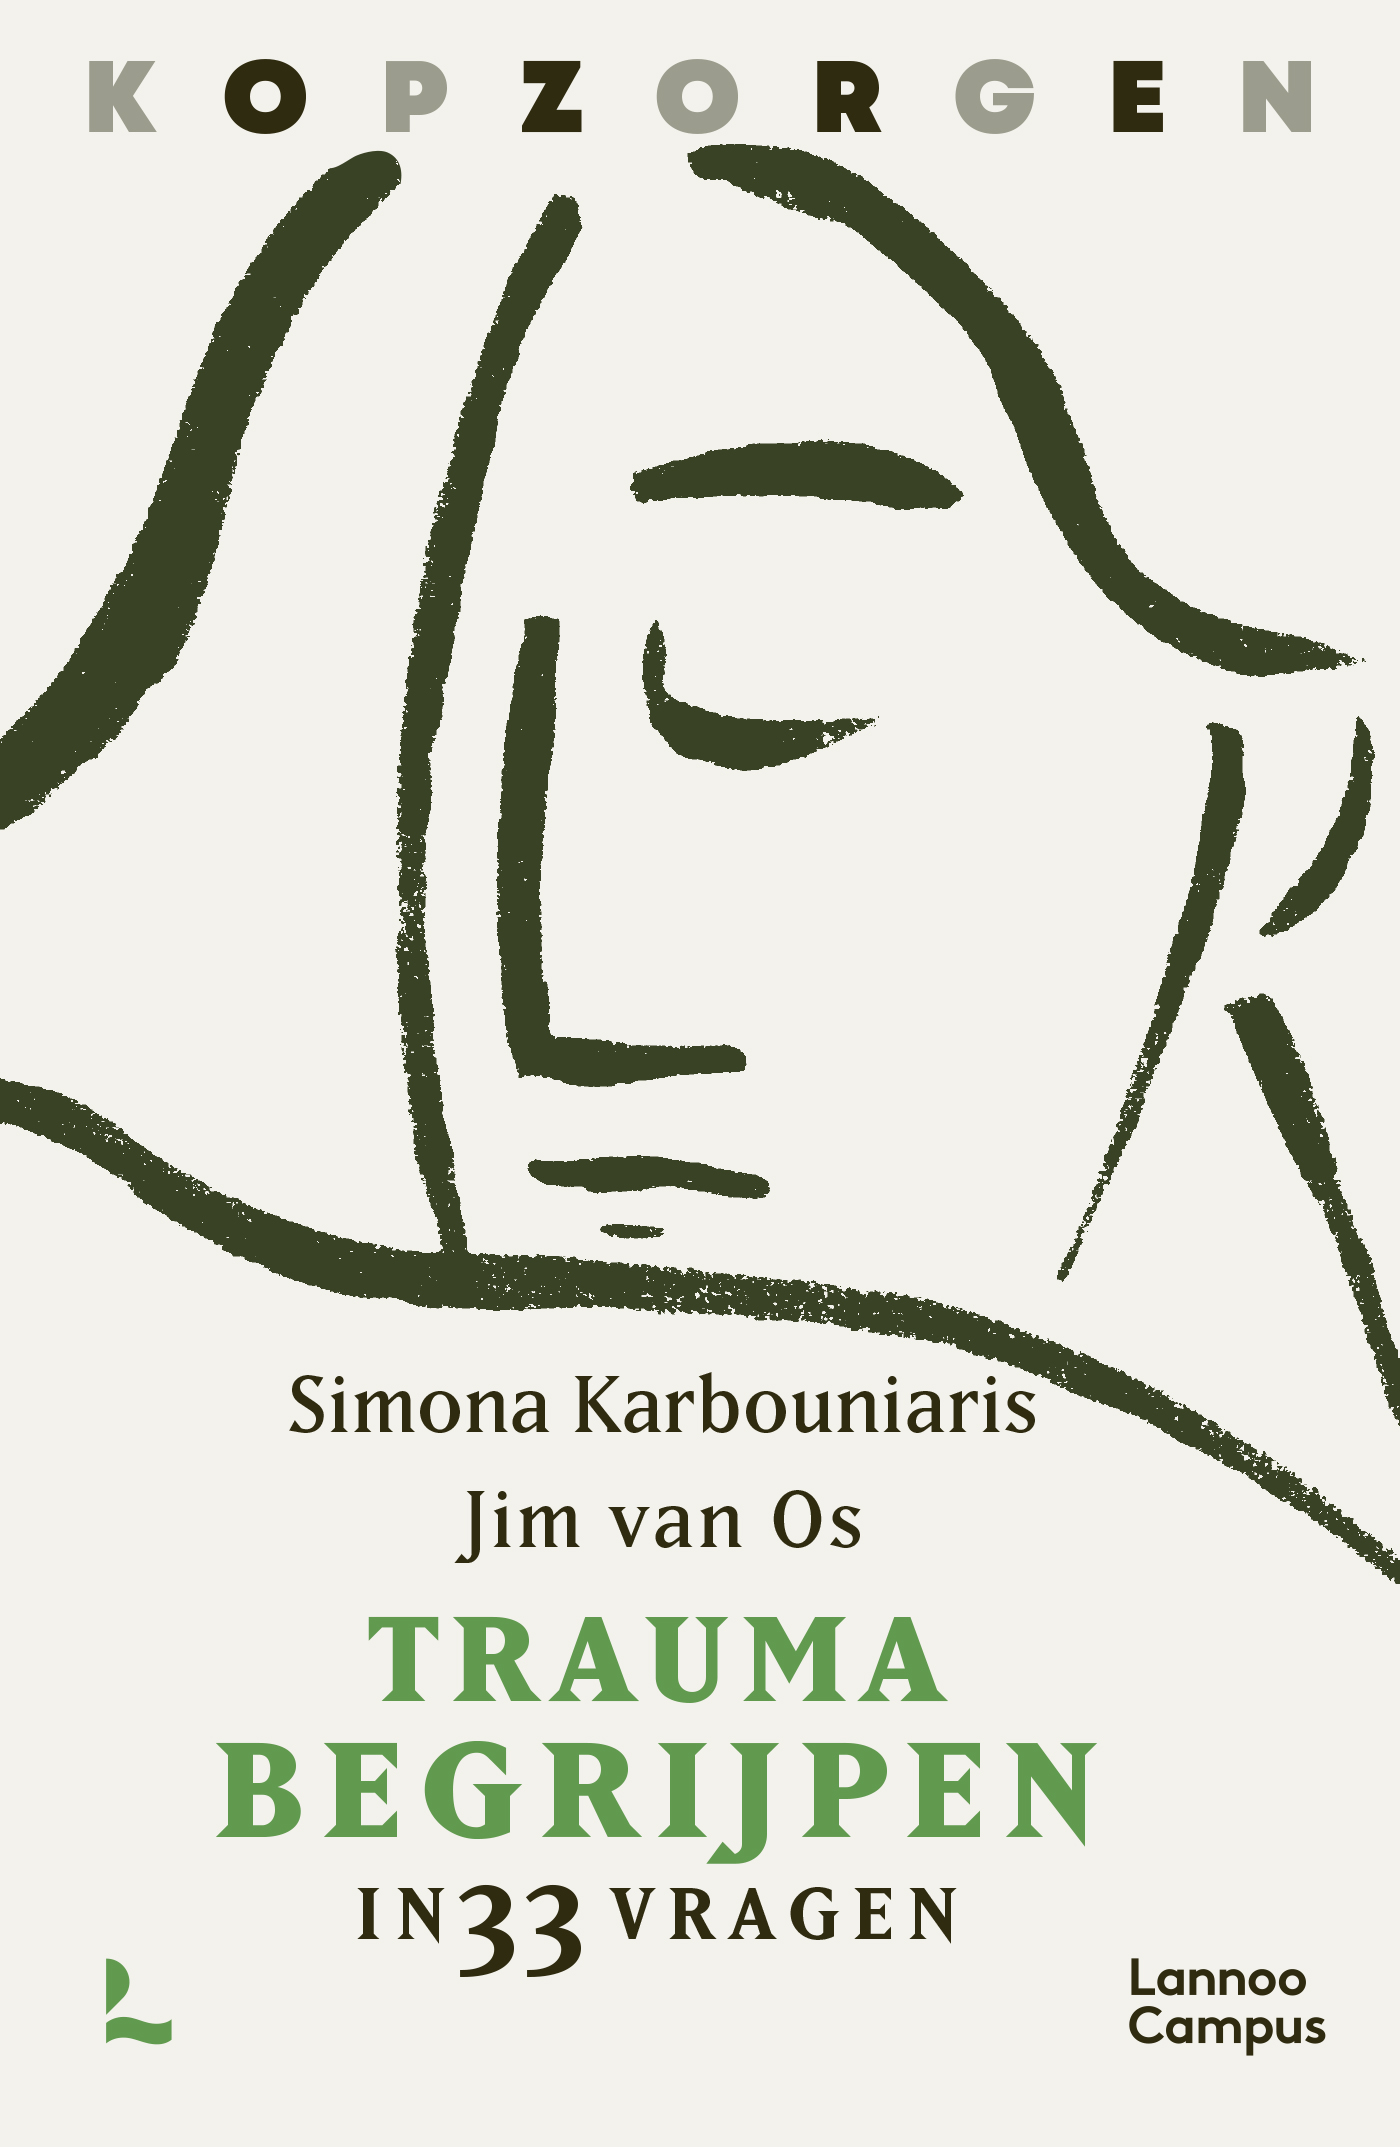 Trauma begrijpen in 33 vragen - Kopzorgen, Simona Karbouniaris, Jim van Os